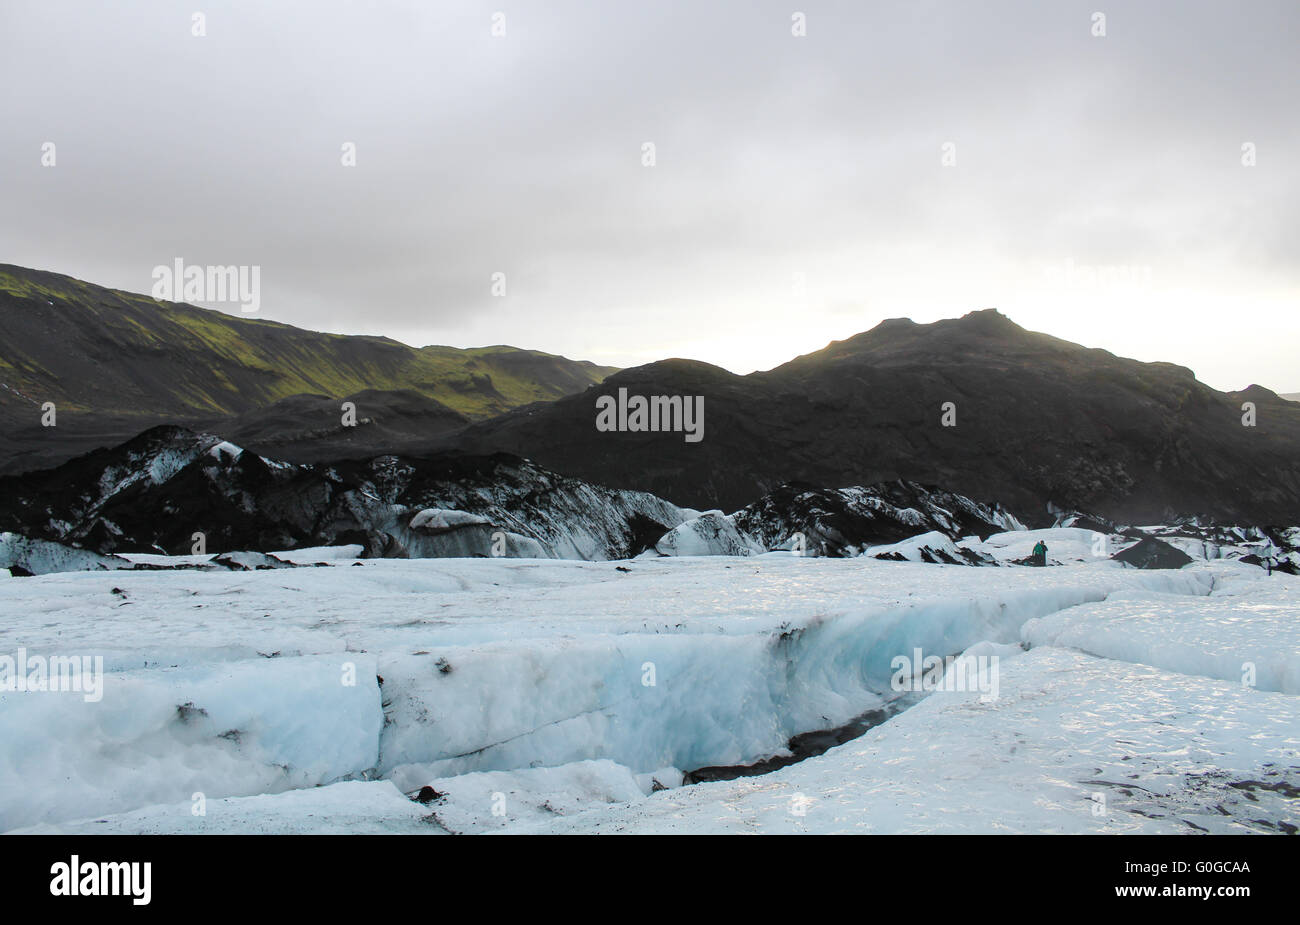 Le Glacier Sólheimajökull dans le sud de l'Islande, une ramification du glacier Mýrdalsjökull, l'est une attraction touristique populaire Banque D'Images